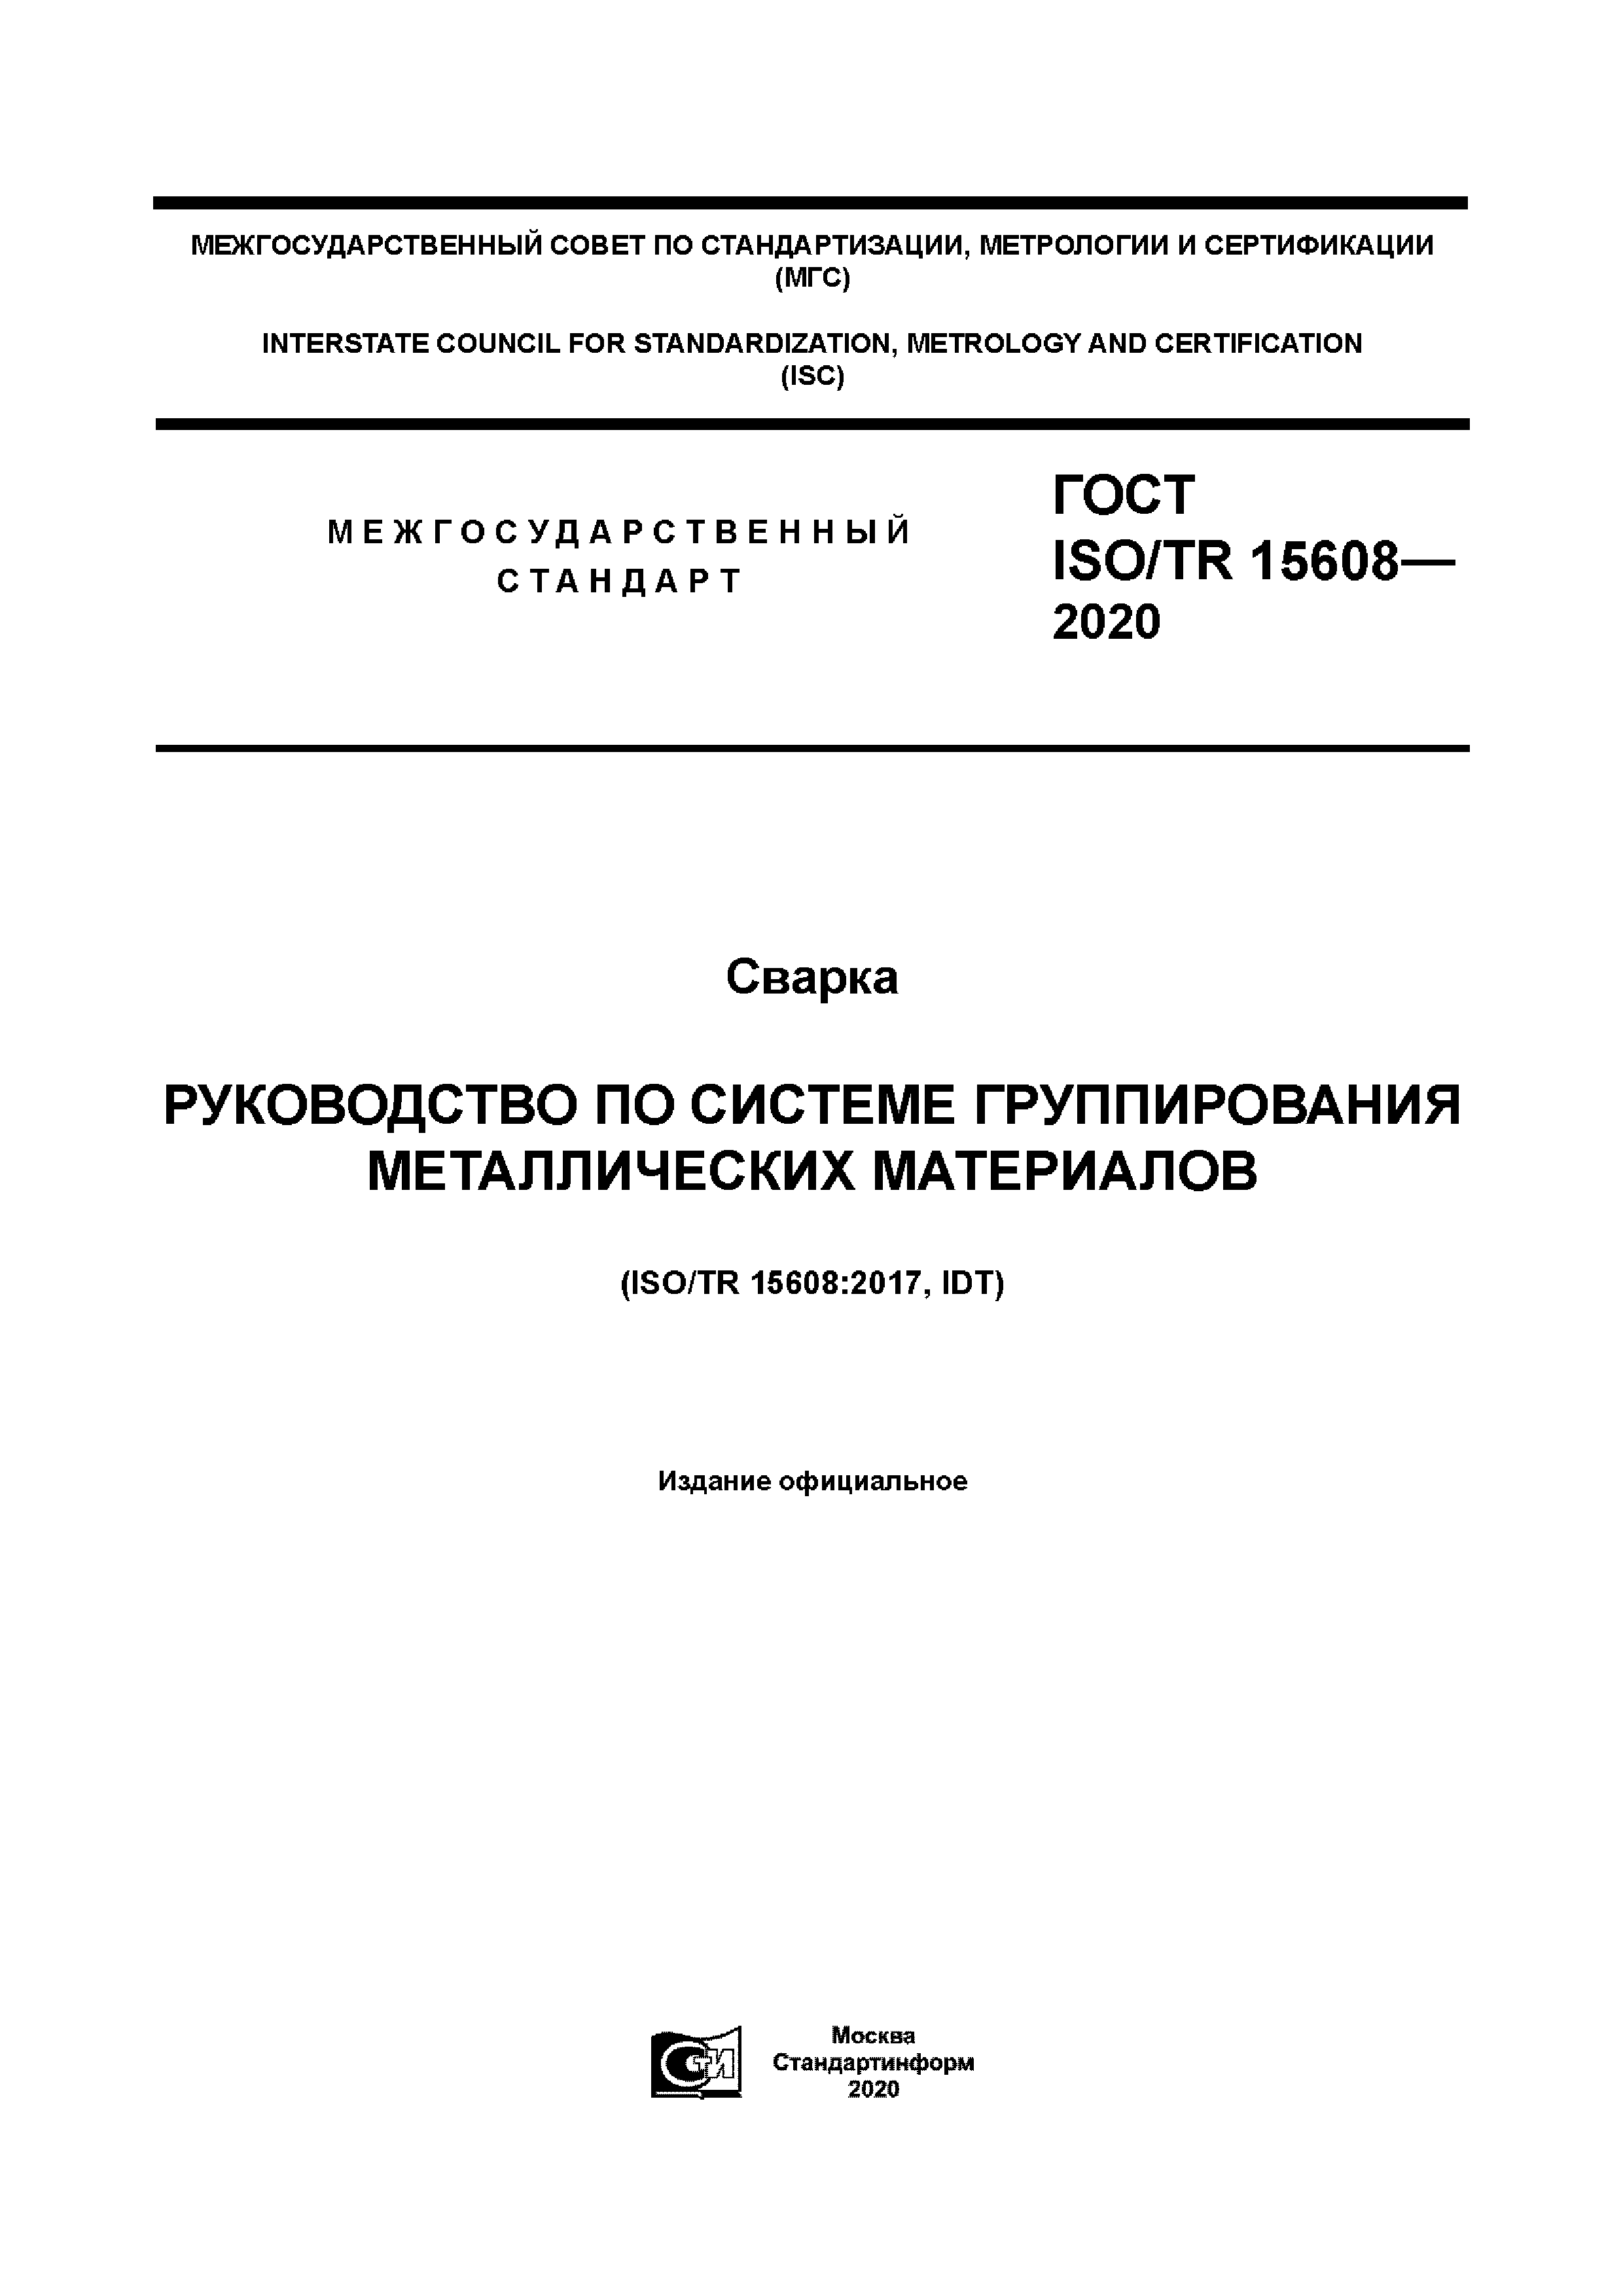 ГОСТ ISO/TR 15608-2020